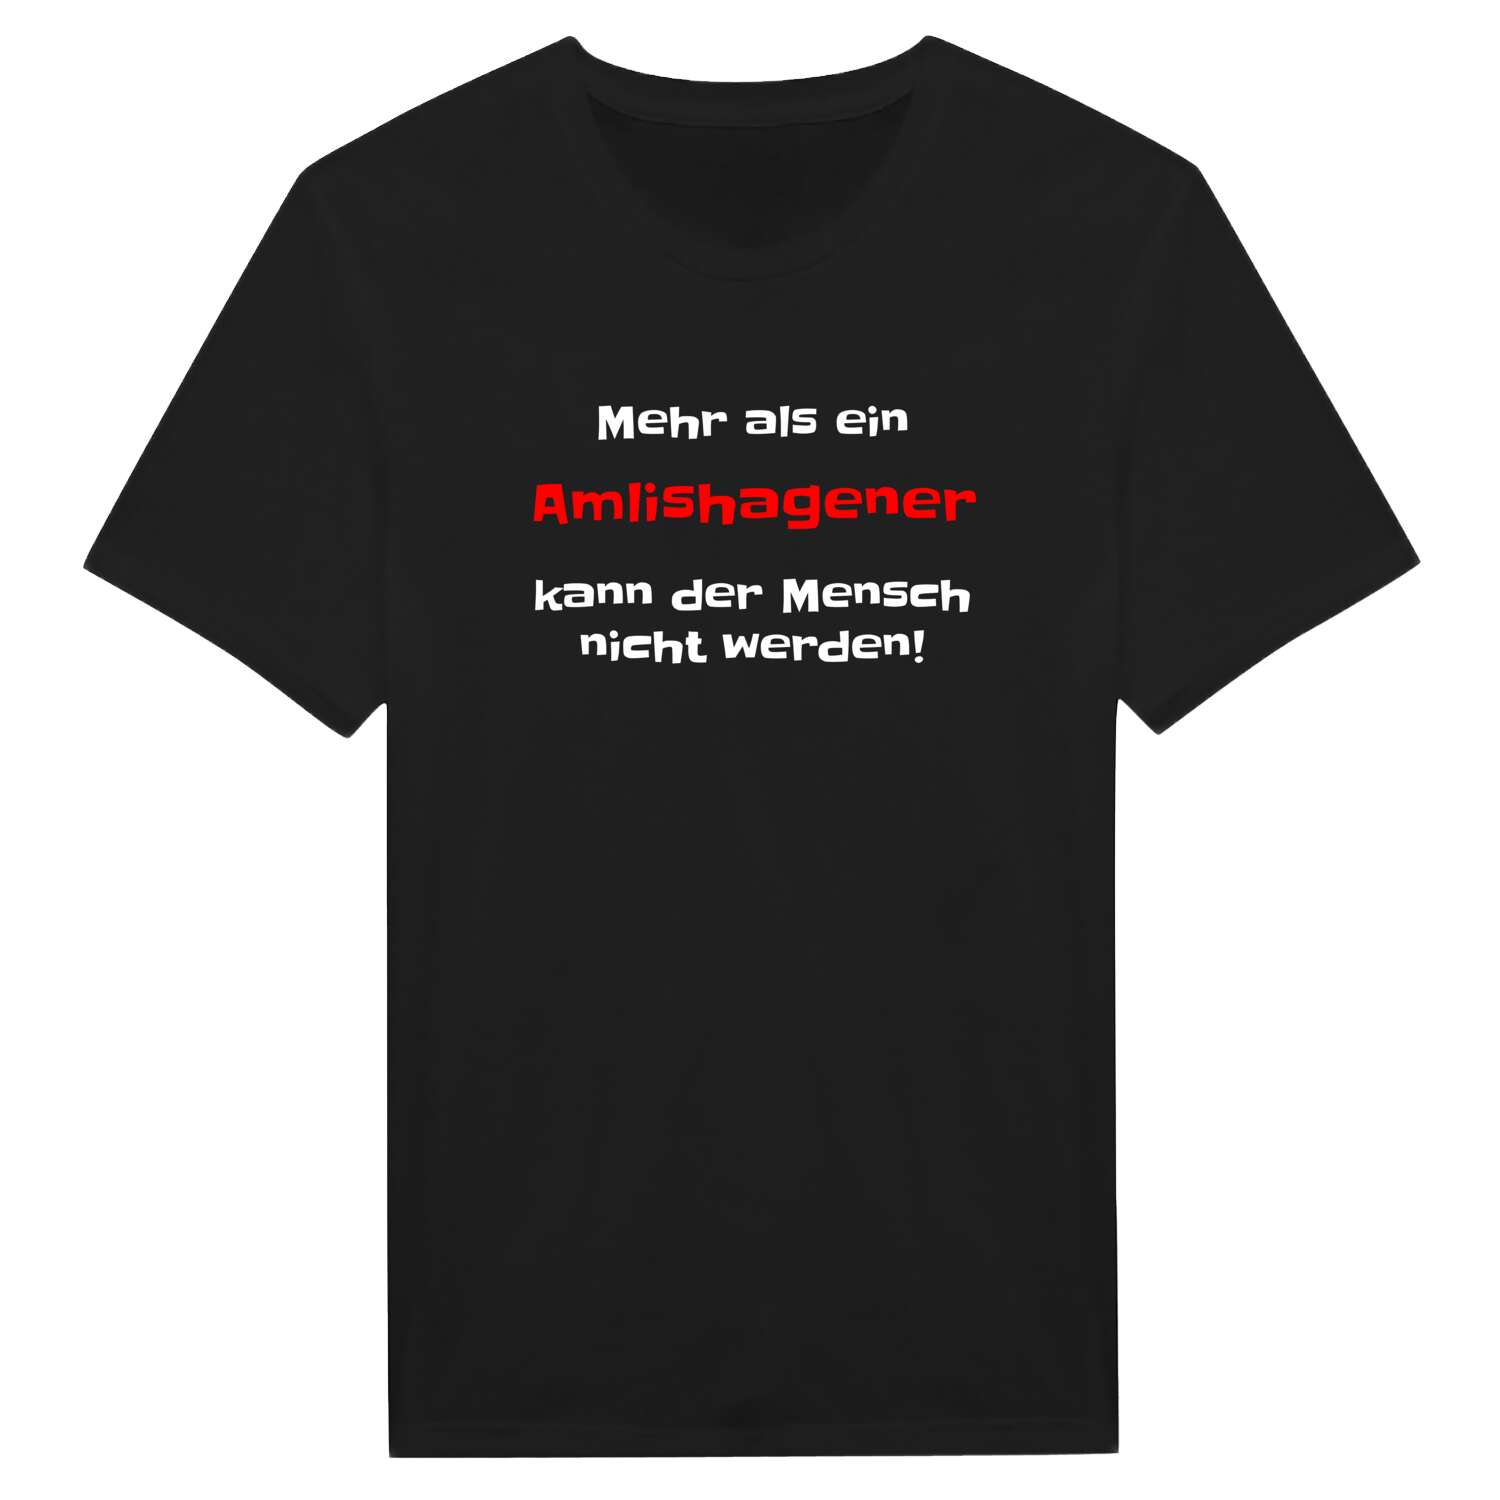 Amlishagen T-Shirt »Mehr als ein«